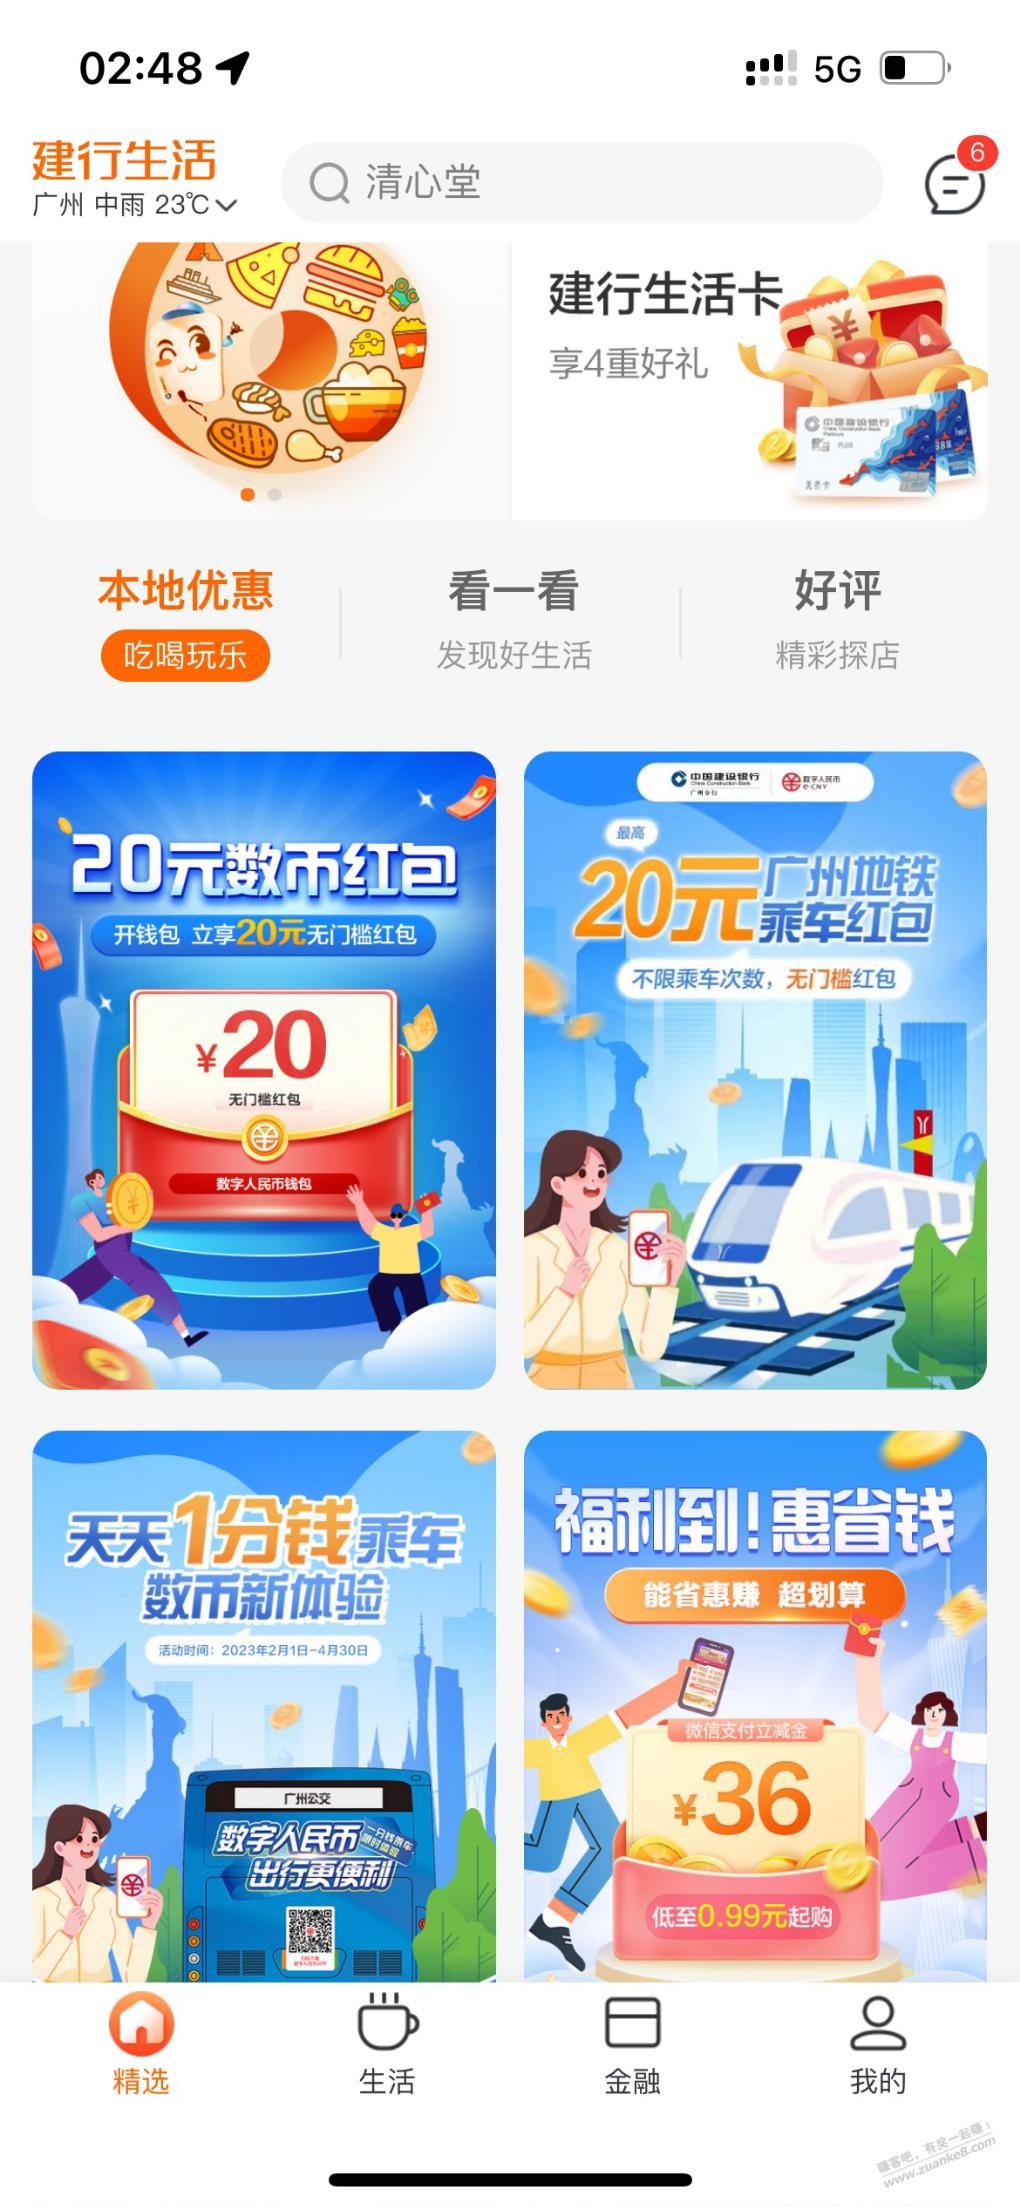 广州地铁20数币-惠小助(52huixz.com)